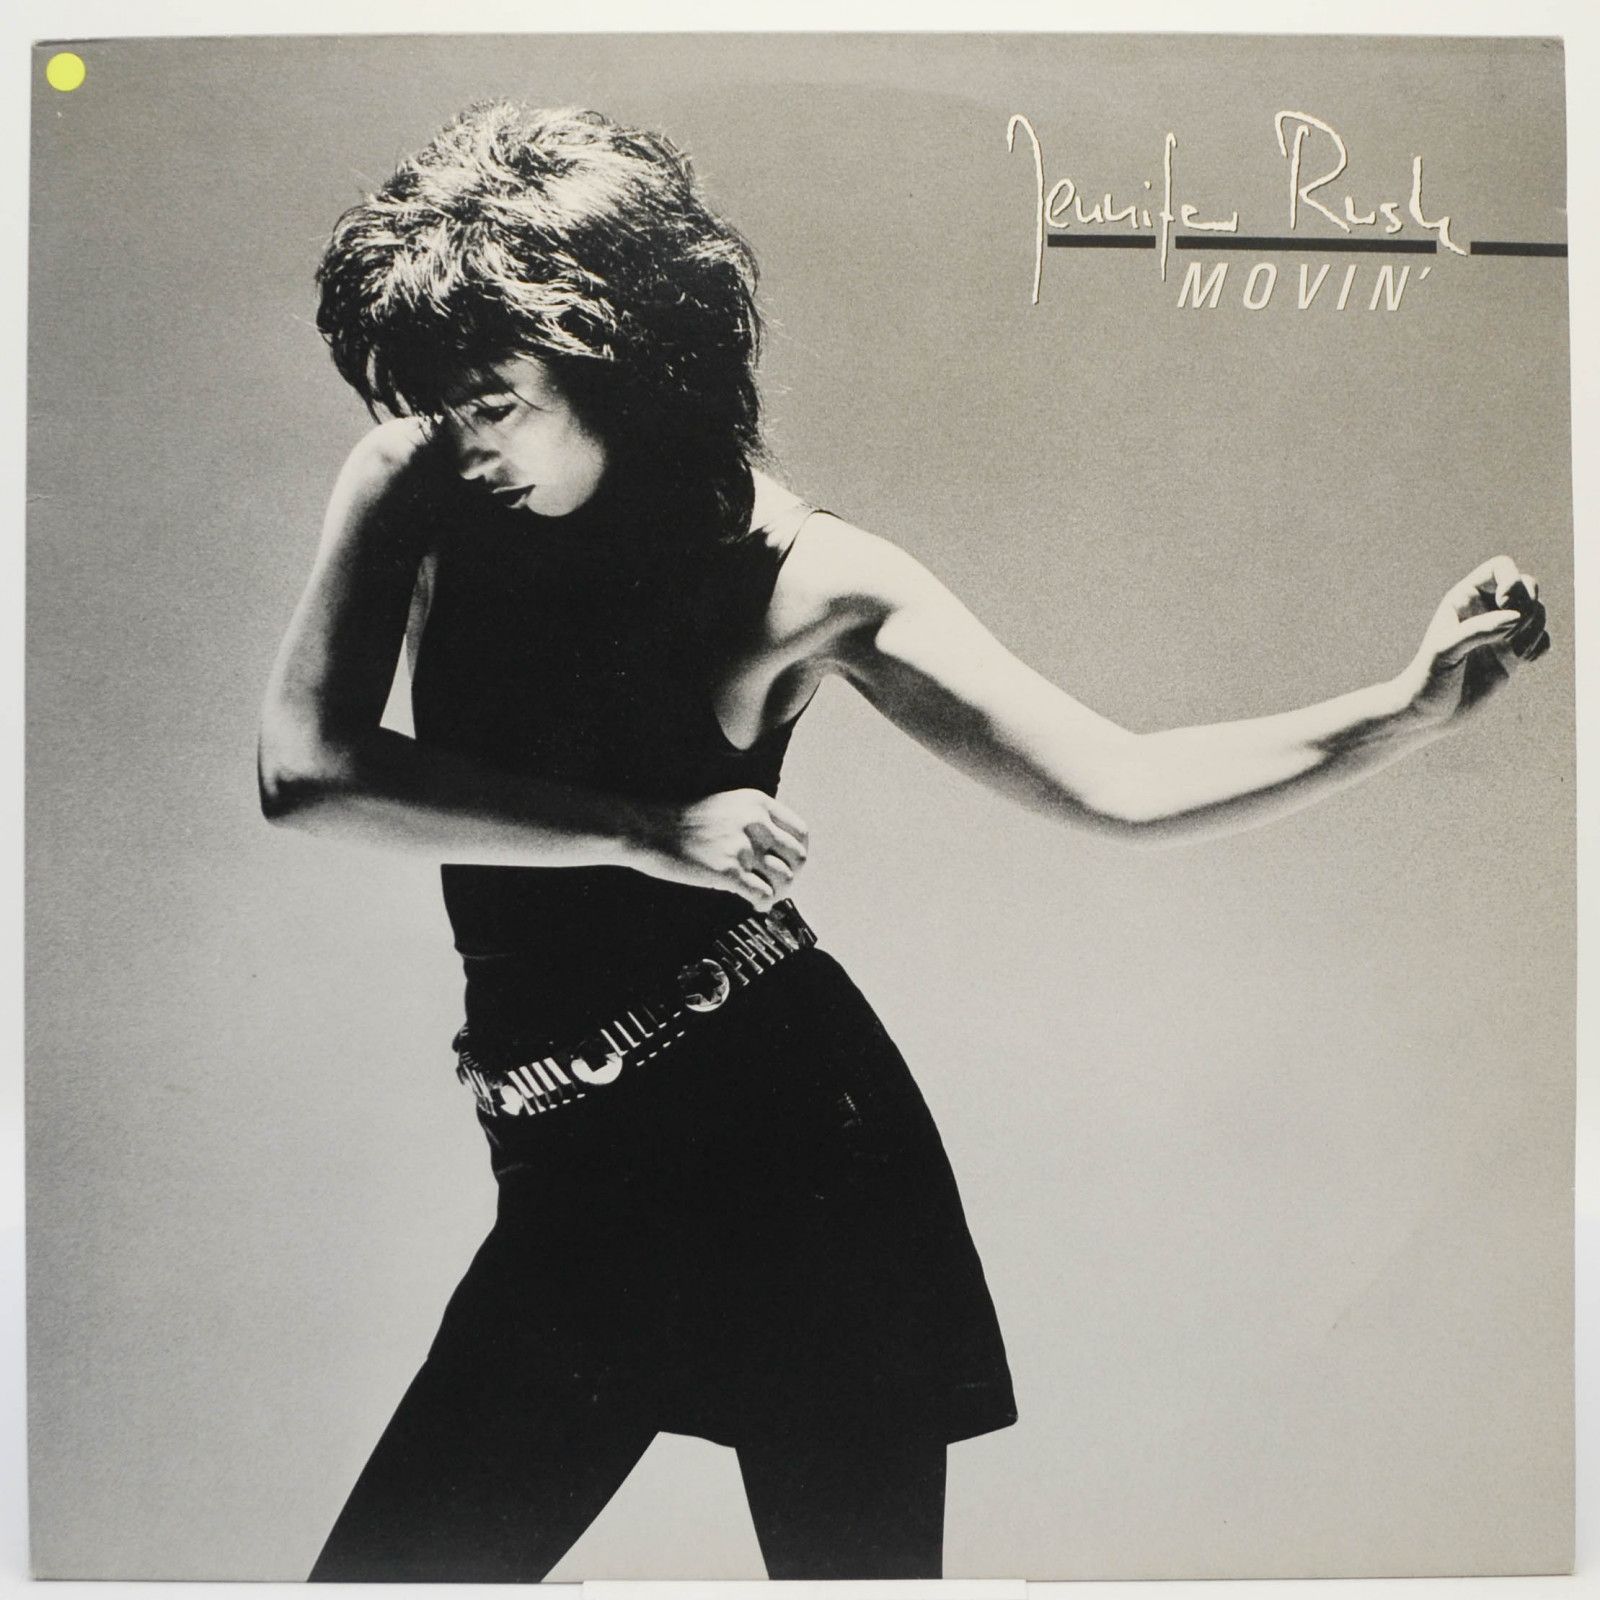 Jennifer Rush — Movin', 1985